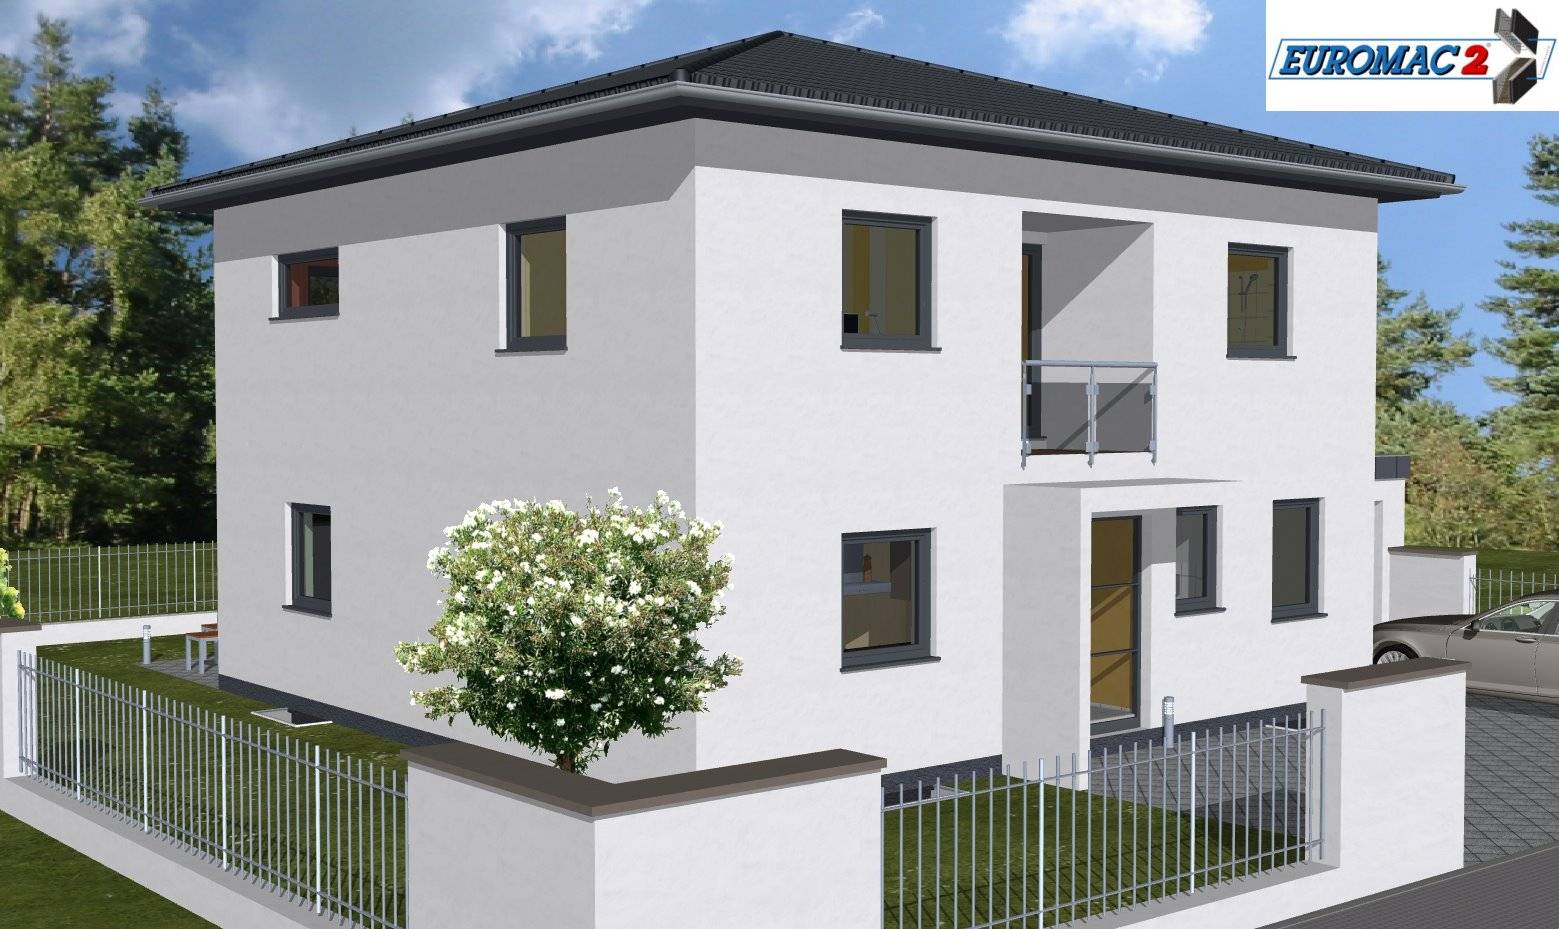 Massivhaus Lifestyle 180 ZD von EUROMAC 2 S.A.S. Bausatzhaus ab 47328€, Stadtvilla Außenansicht 1